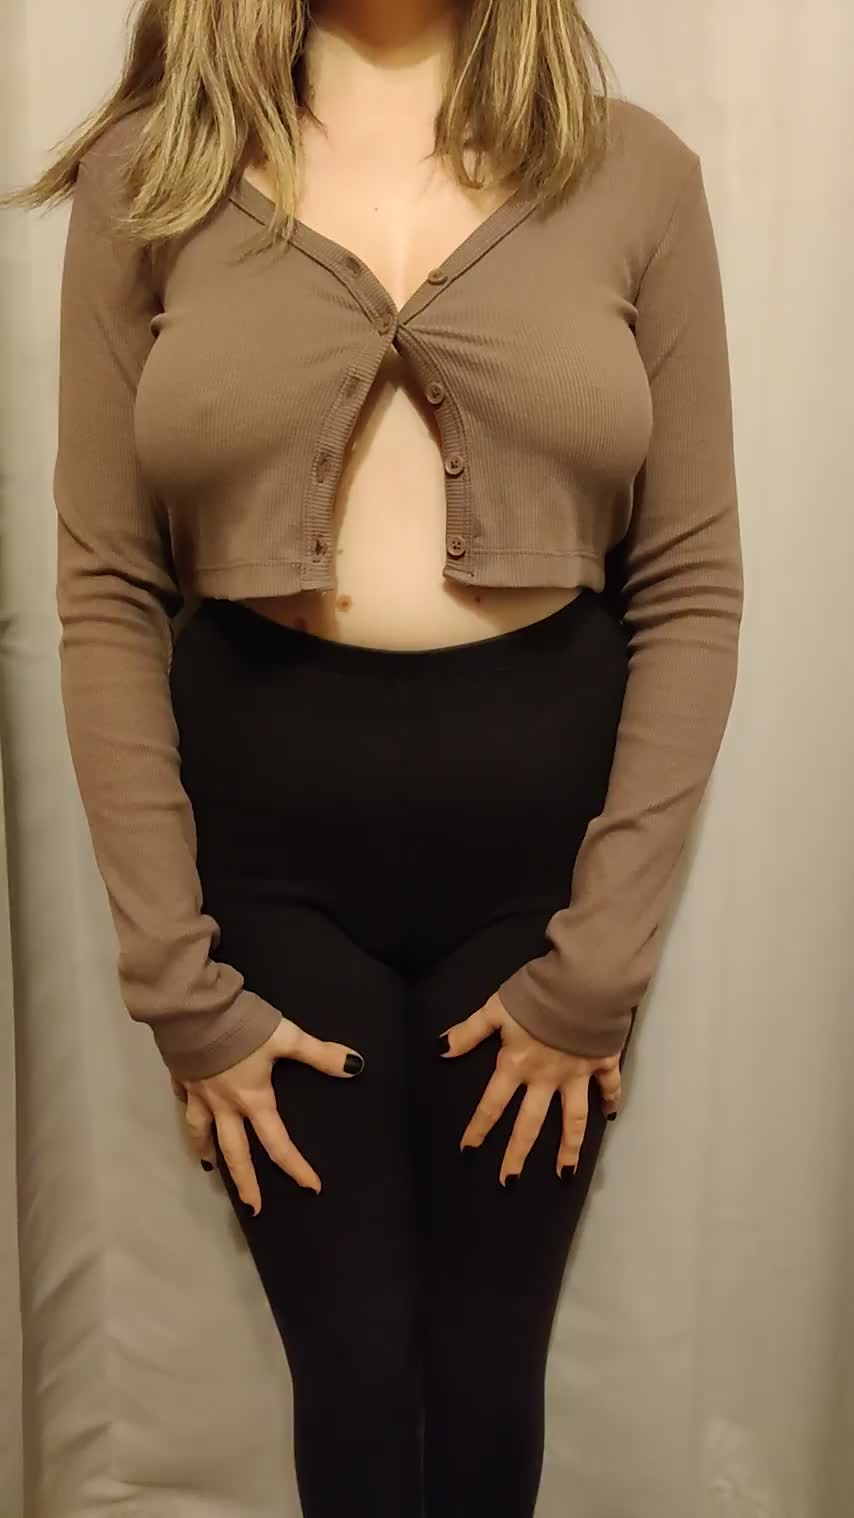 Soooo proud of my boobs : video clip